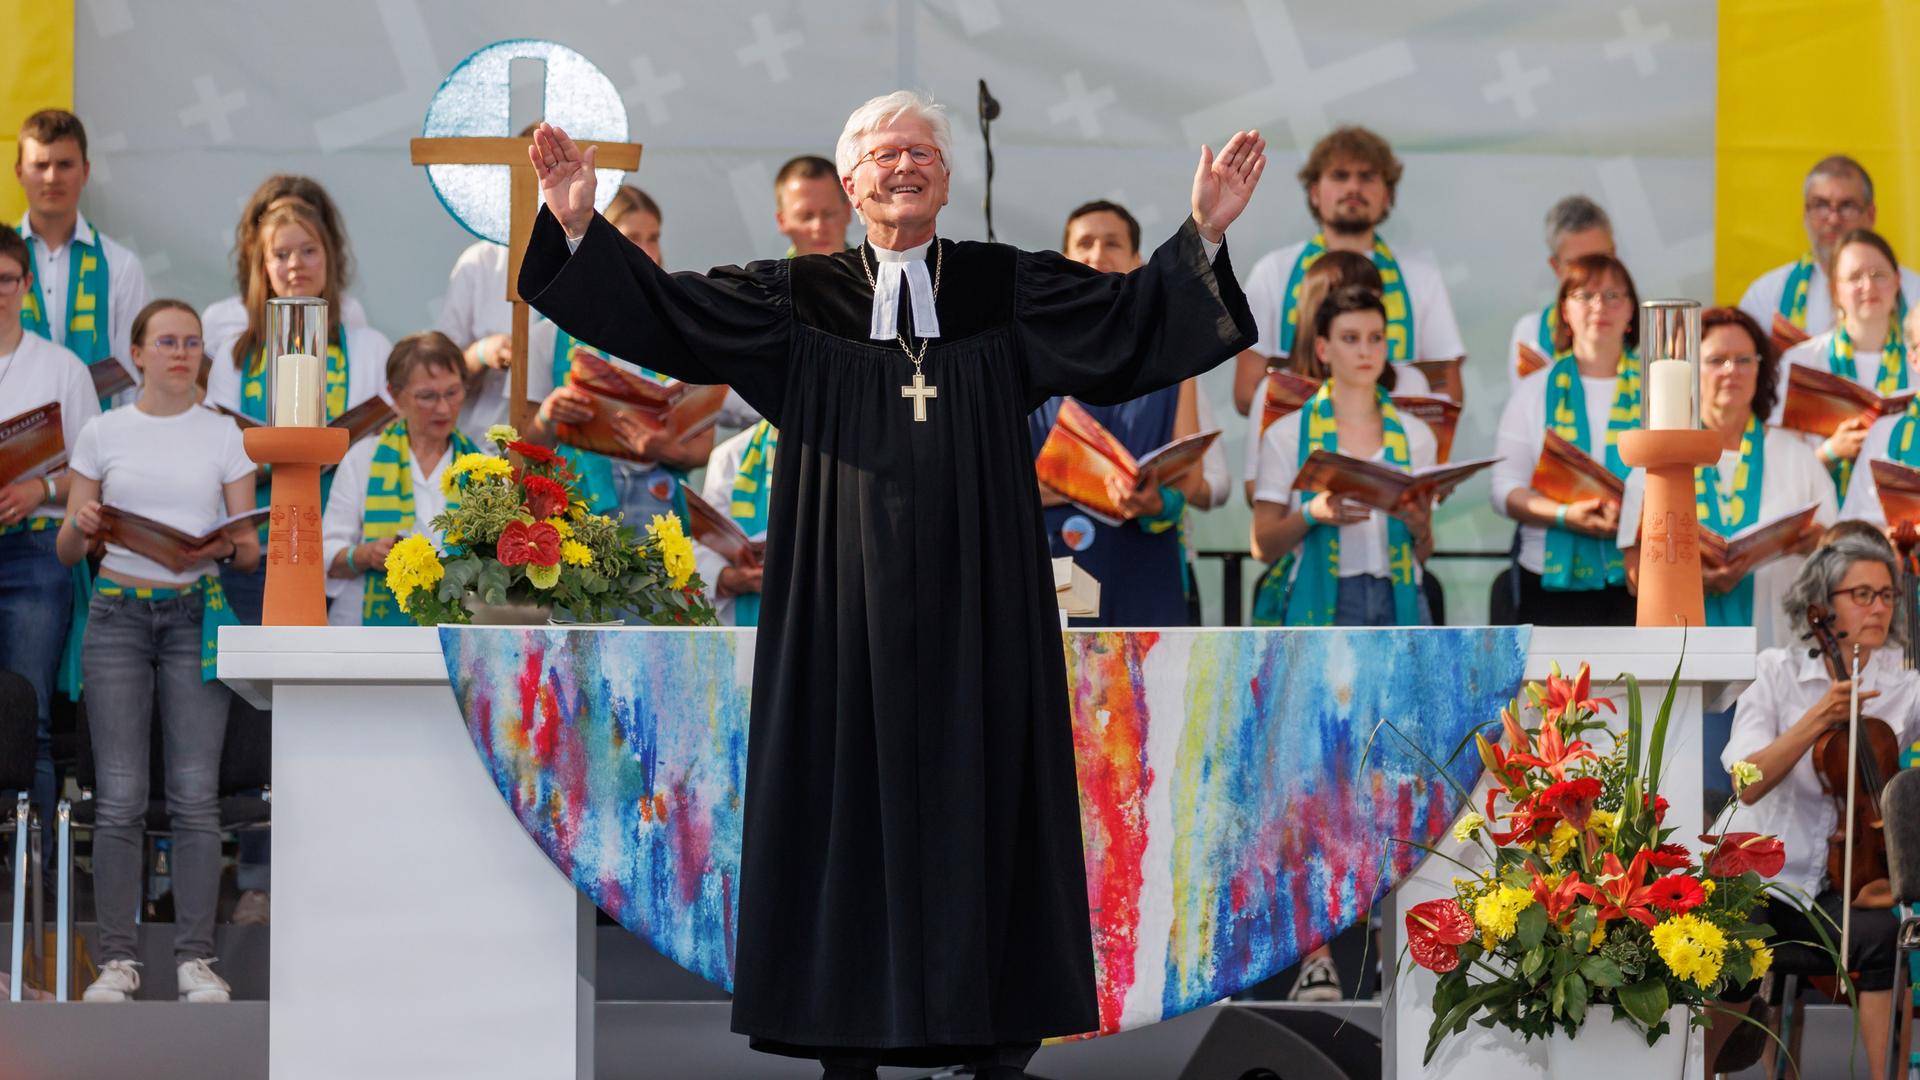 Ein Mann in Kirchen-Kleidung steht auf einer Bühne mit Blumen und anderen Menschen und hebt lachend die Arme zum Segen hoch.